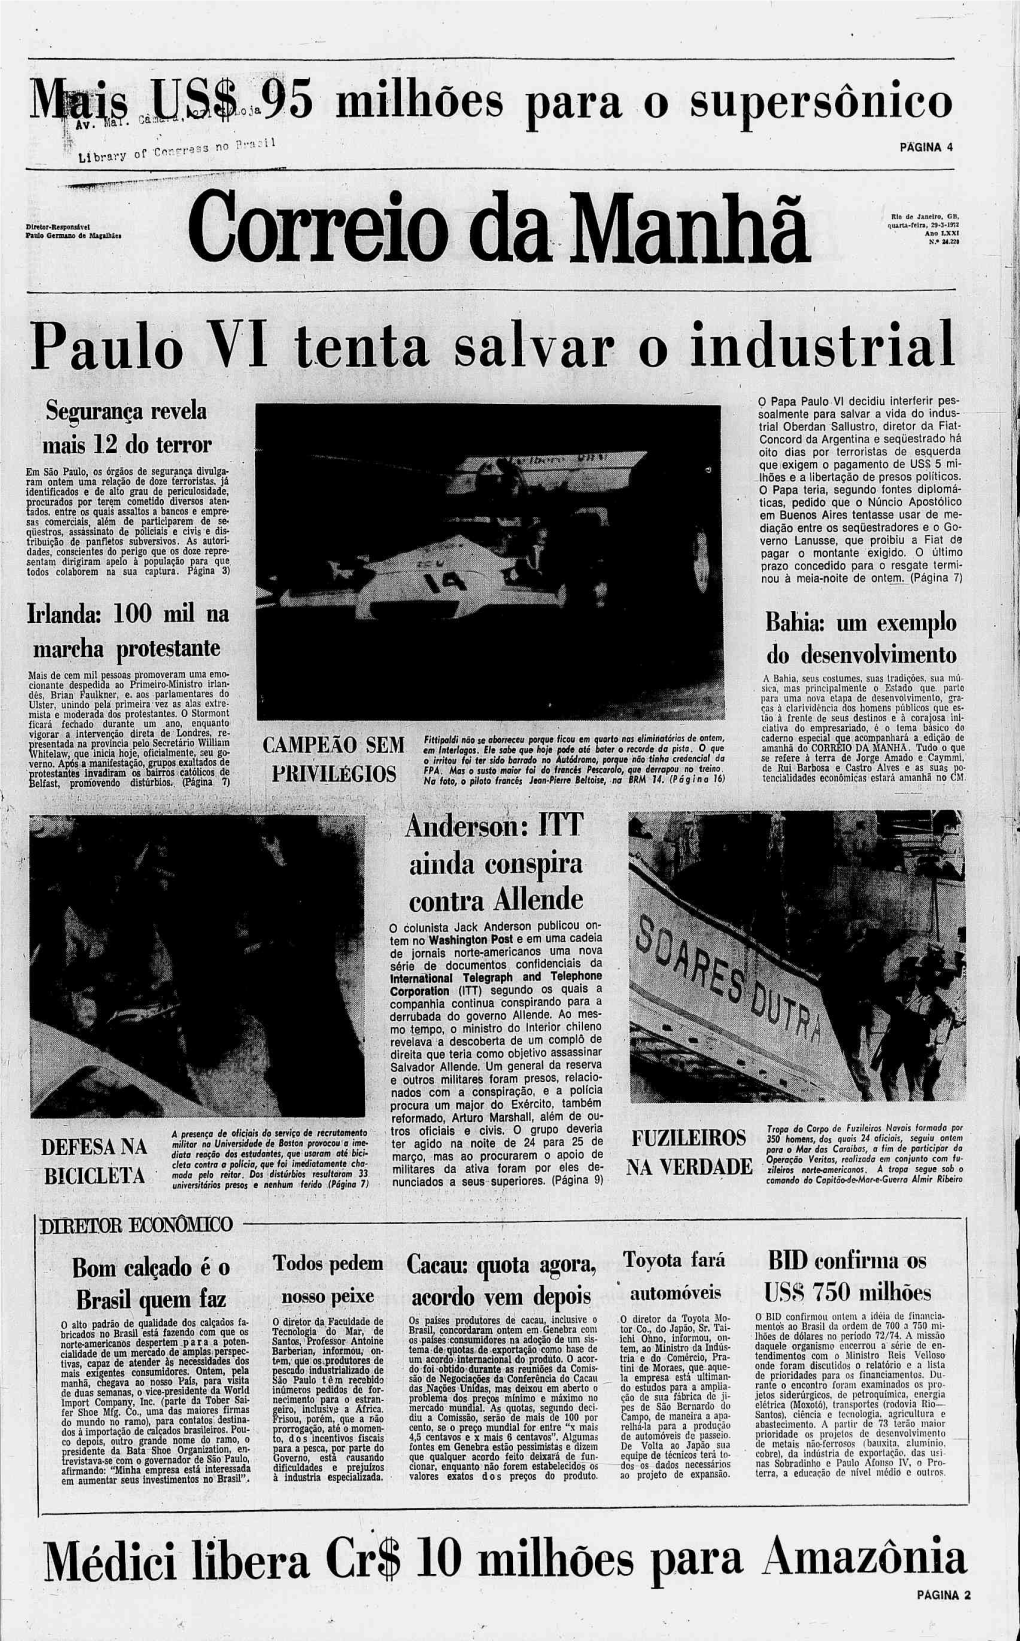 Paulo VI Tenta Salvar O Industrial